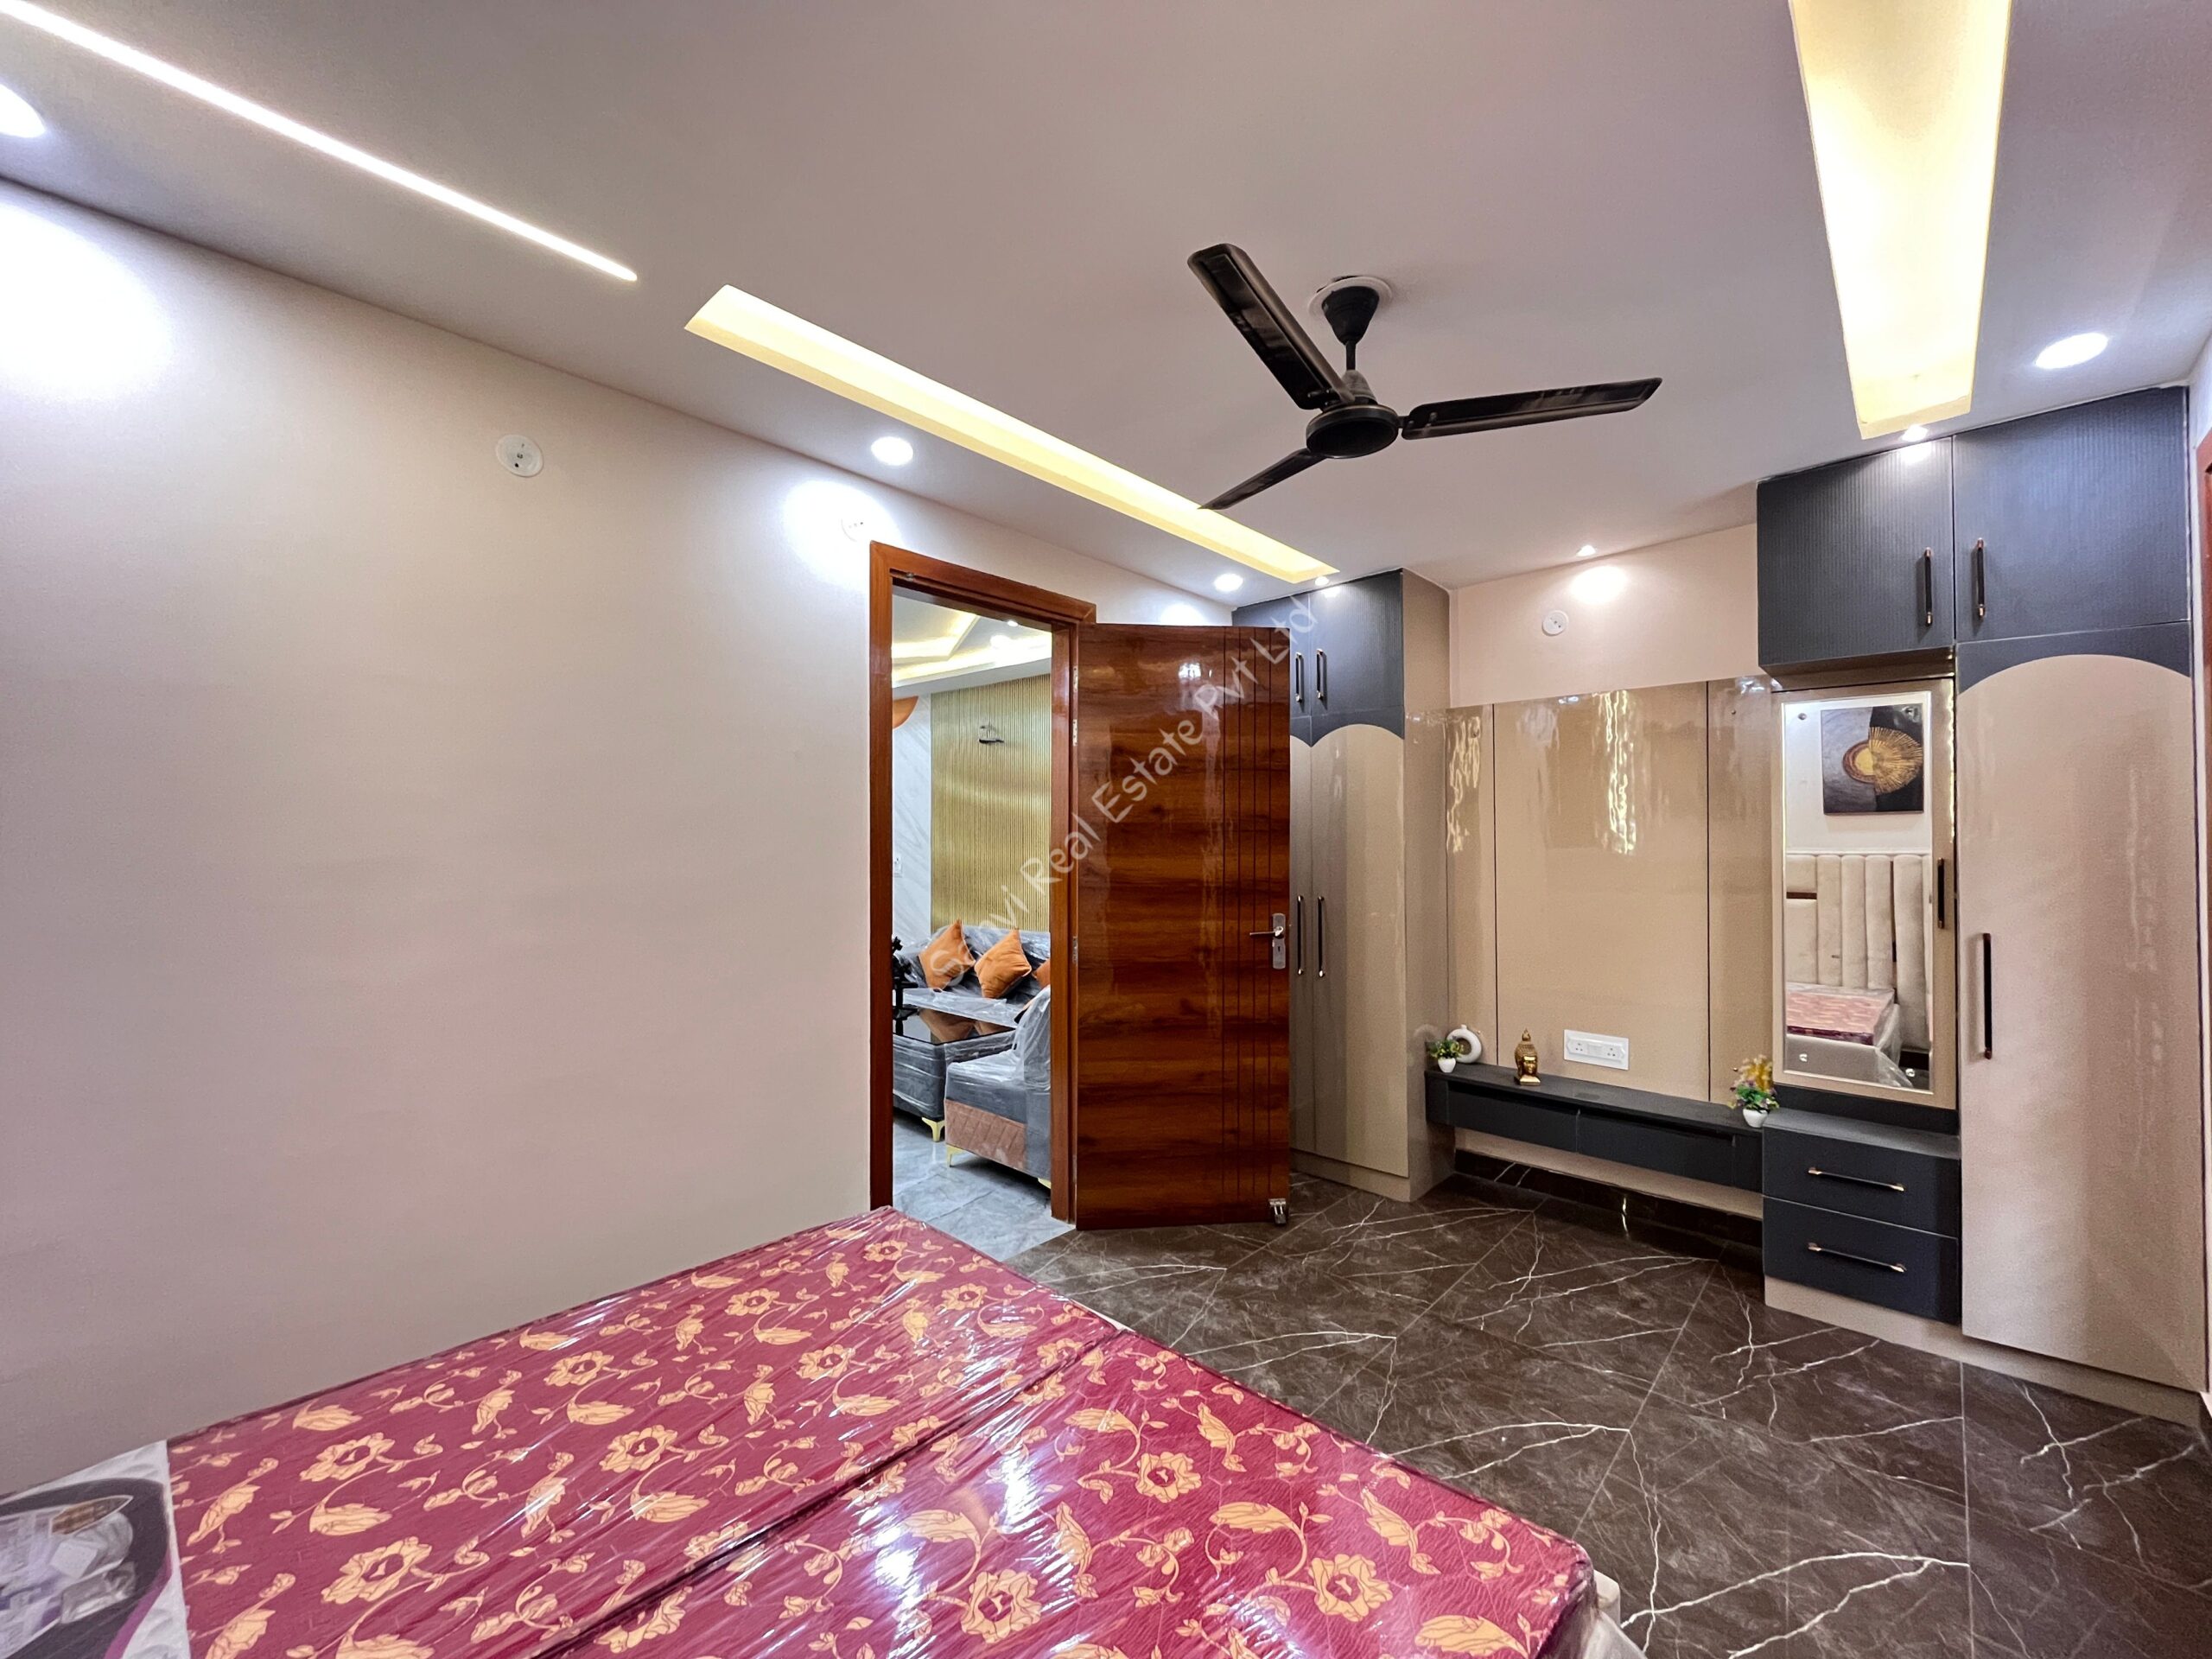 2 BHK Fully Furnished Flat in Uttam Nagar | Flats For Sale | M-Sanvi Real Estate